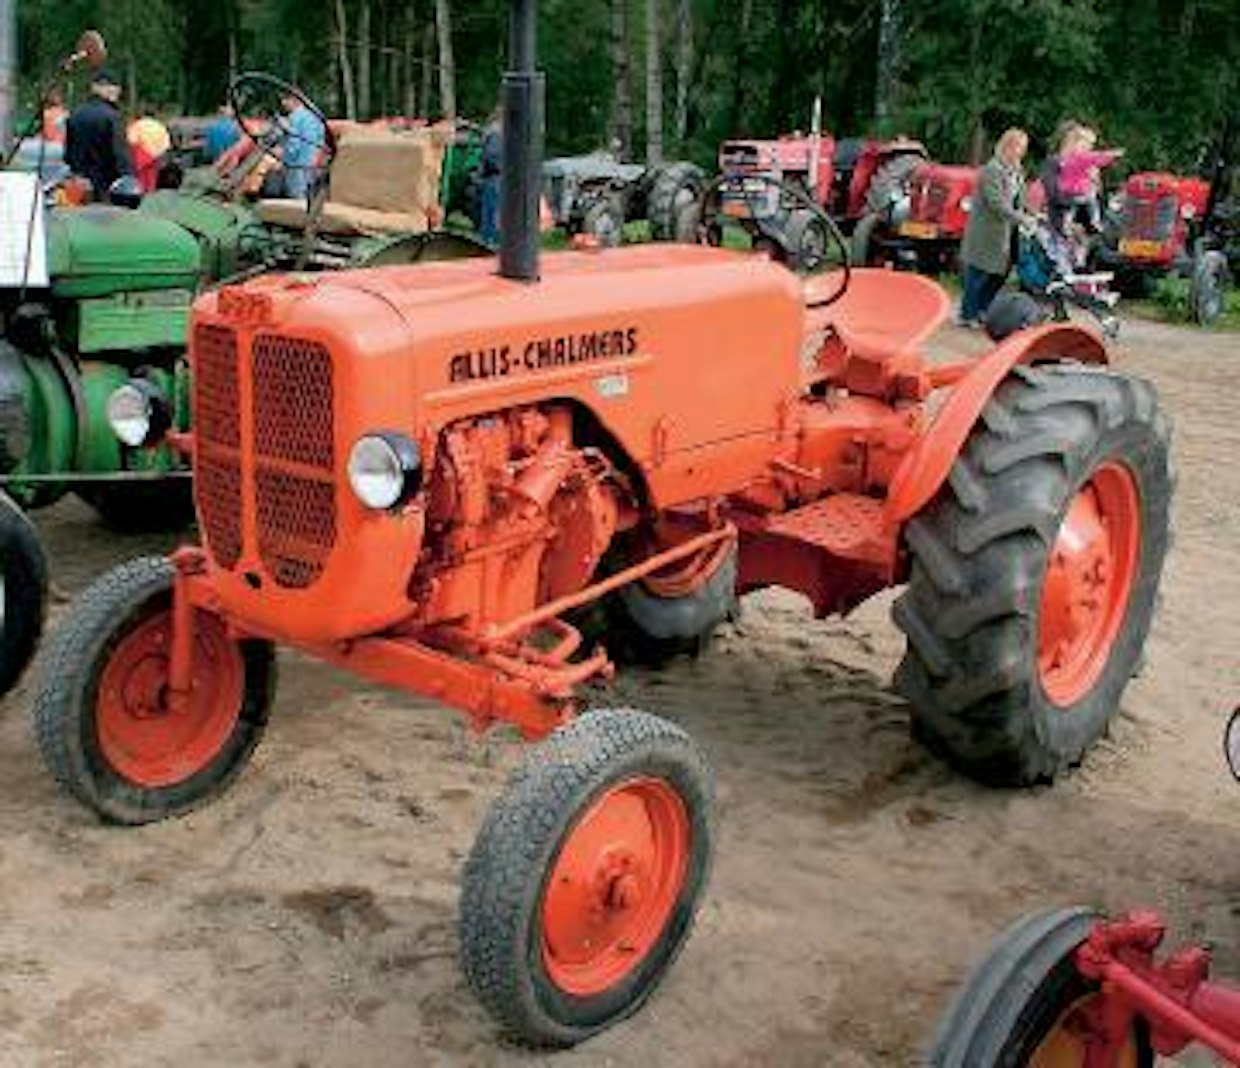 Allis-Chalmers ei onnistunut Euroopan puolella tekemään kunnon traktoria, eikä D-270 ‑mallista  kehitetty Allis-Chalmers D-272 tehnyt poikkeusta. Vuosina 195760 tuotannossa olleessa traktorissa oli huonosti käynnistyvä 32 hv:n Perkins P3-moottori, 21,7 km:n huippunopeuteen pystyvä 4-nopeuksinen vaihteisto ja 1590 kilon työpaino. Hyvinkää